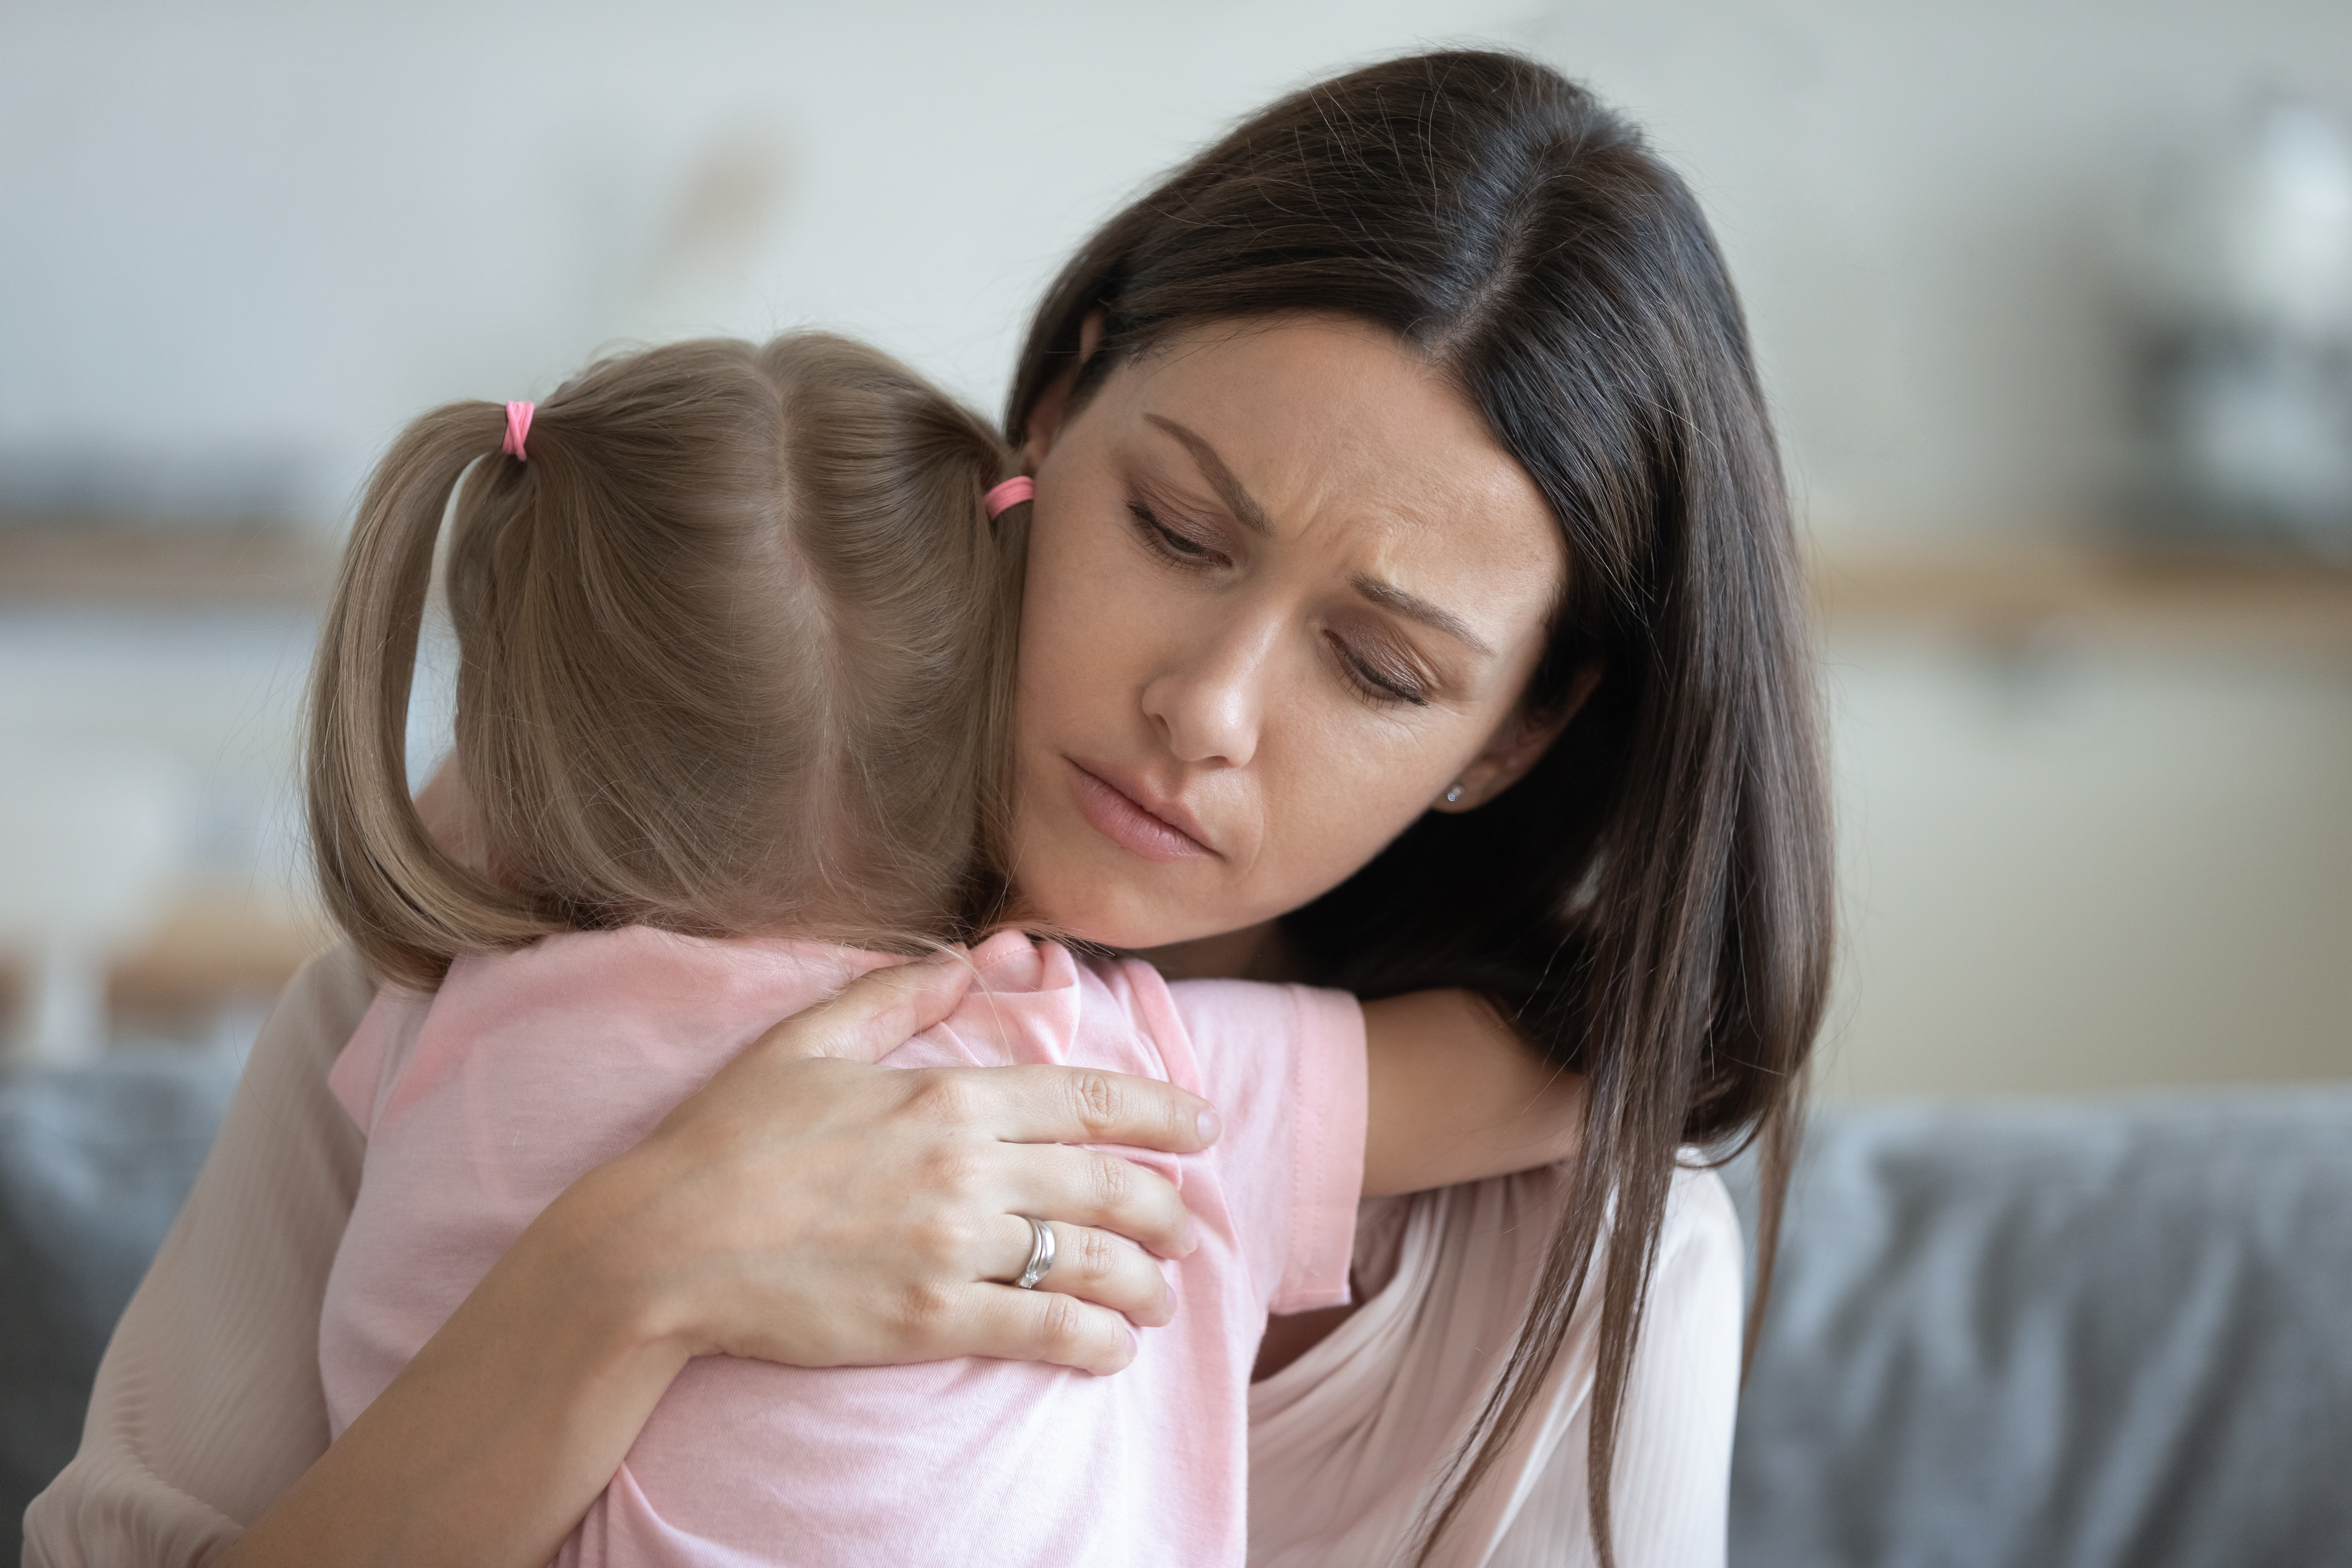 Mutter tröstet ihre weinende kleine Tochter mit einer Umarmung | Quelle: Shutterstock